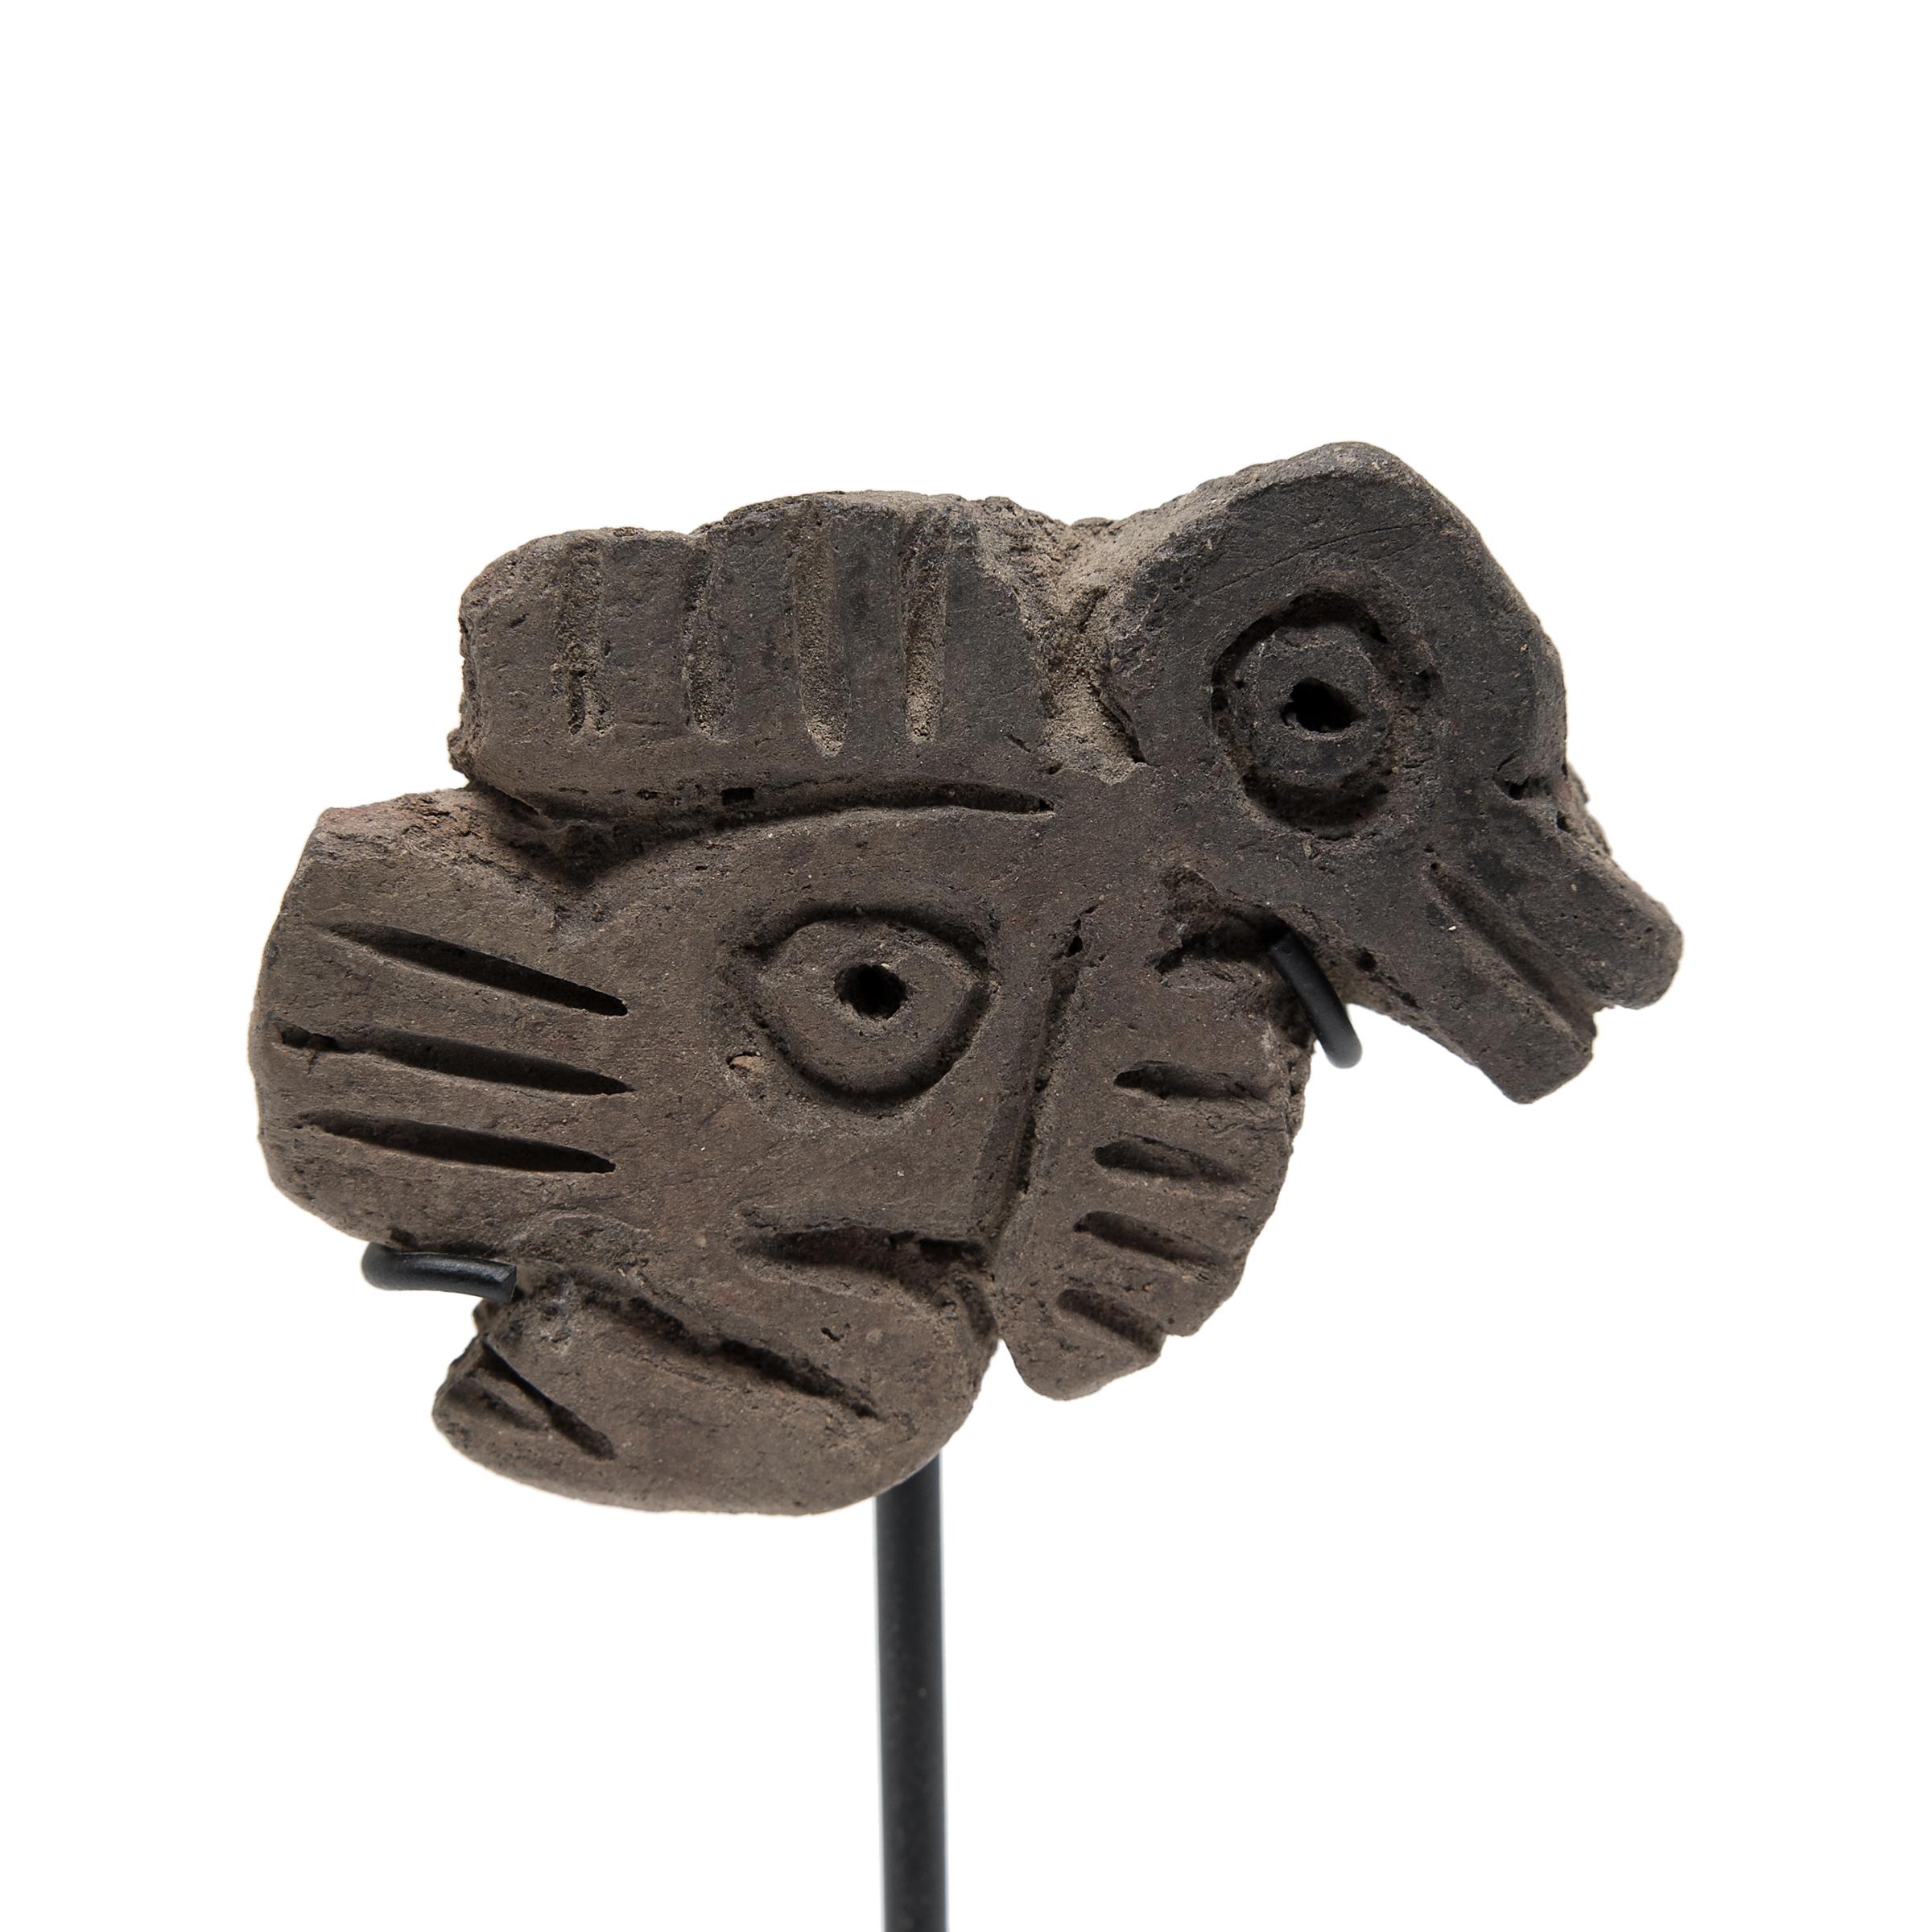 Briefmarken oder Sellos wie diese waren in der präkolumbianischen Zeit in Mesoamerika üblich und während der Formationszeit zwischen 1200 und 800 v. Chr. am beliebtesten. Der ursprüngliche Verwendungszweck der Sellos ist nicht bekannt, aber man